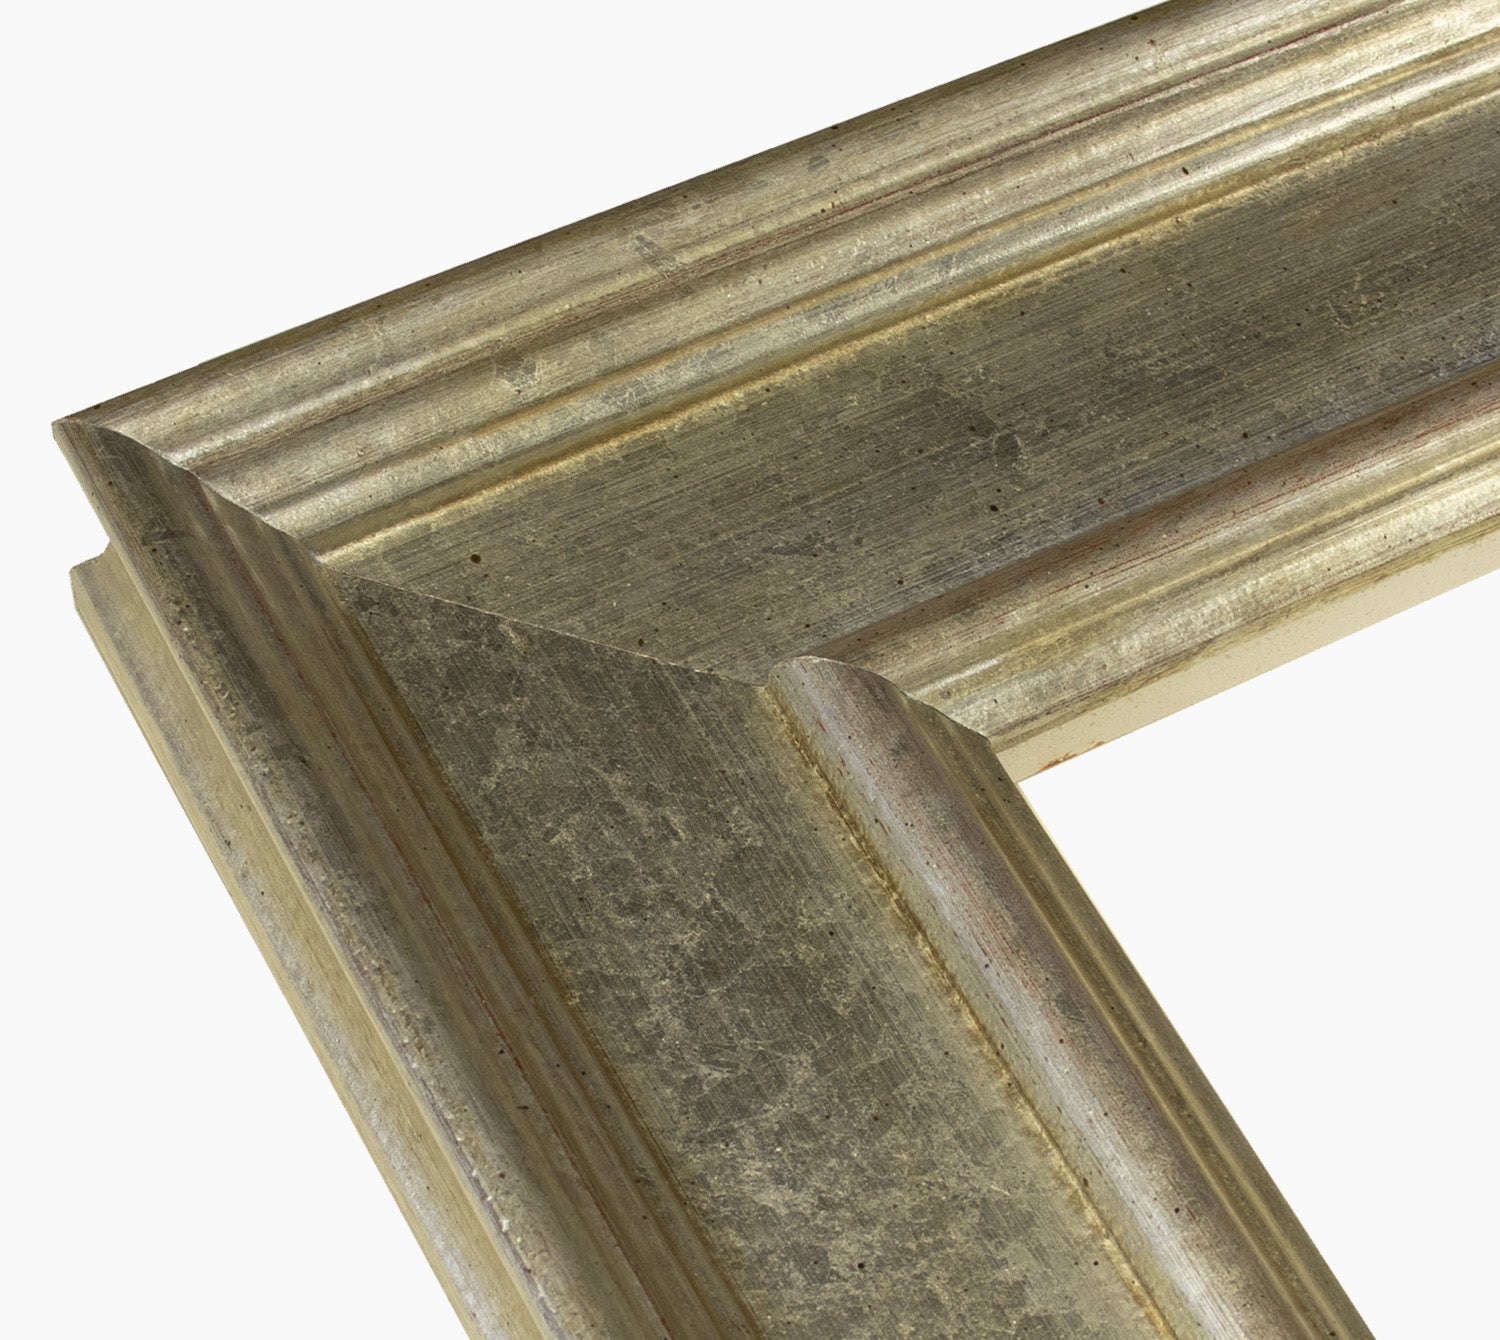 740.011 cadre en bois à la feuille d'argent mesure de profil 100x50 mm Lombarda cornici S.n.c.